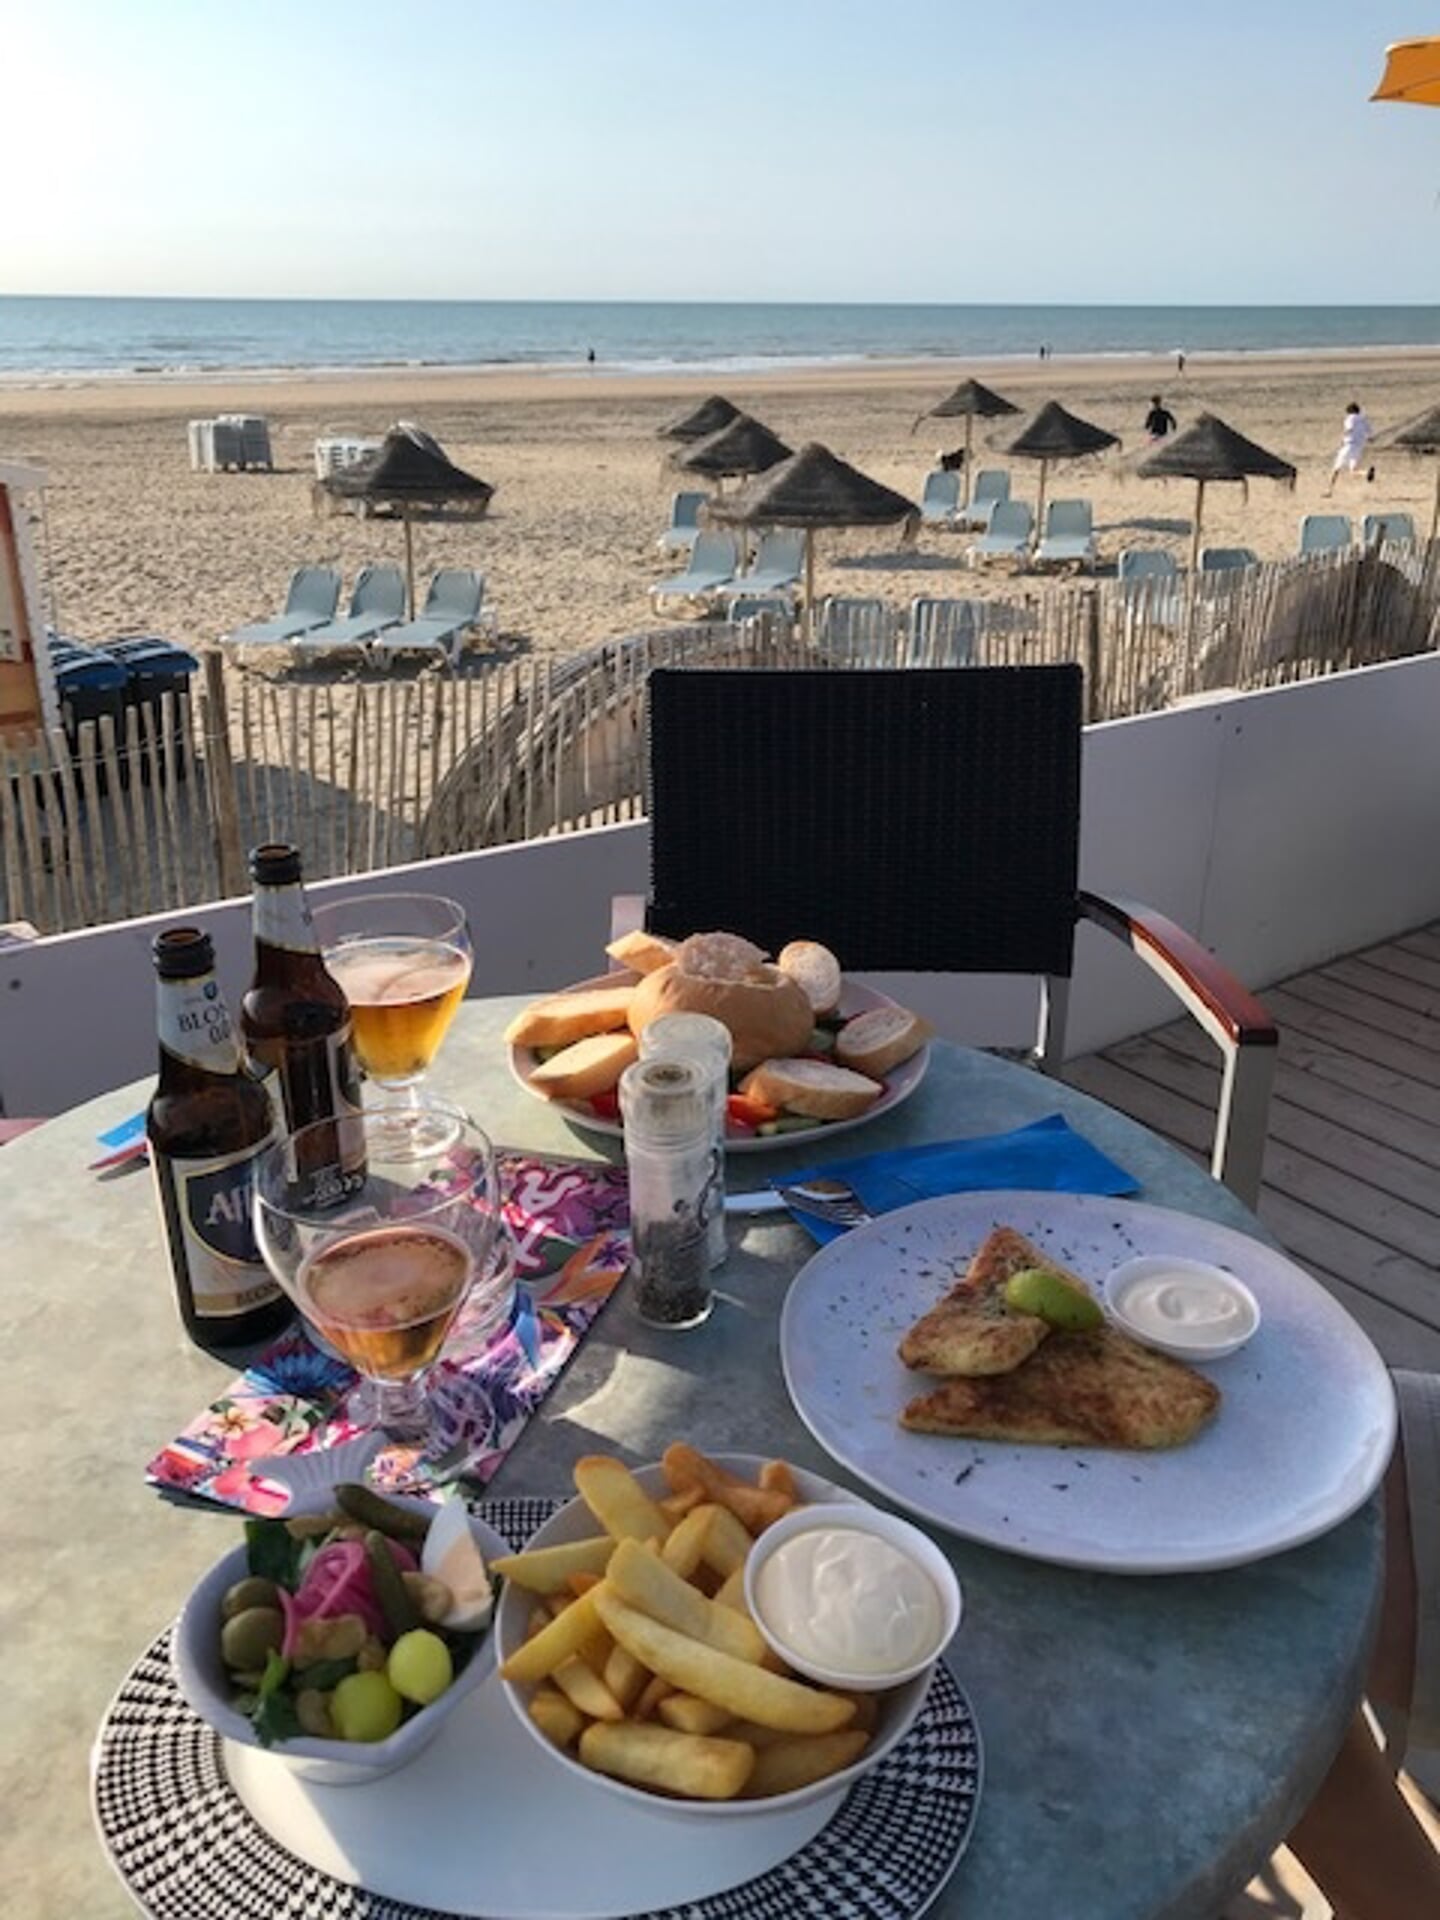 ,,Op 28 juni had ik een leuke dag met mijn broer op het strand van Zandvoort. Na een lange wandeling gingen we lekker eten op een terras. Bijzonder is dat mijn broer en ik zo’n goed contact hebben na het overlijden van onze ouders.